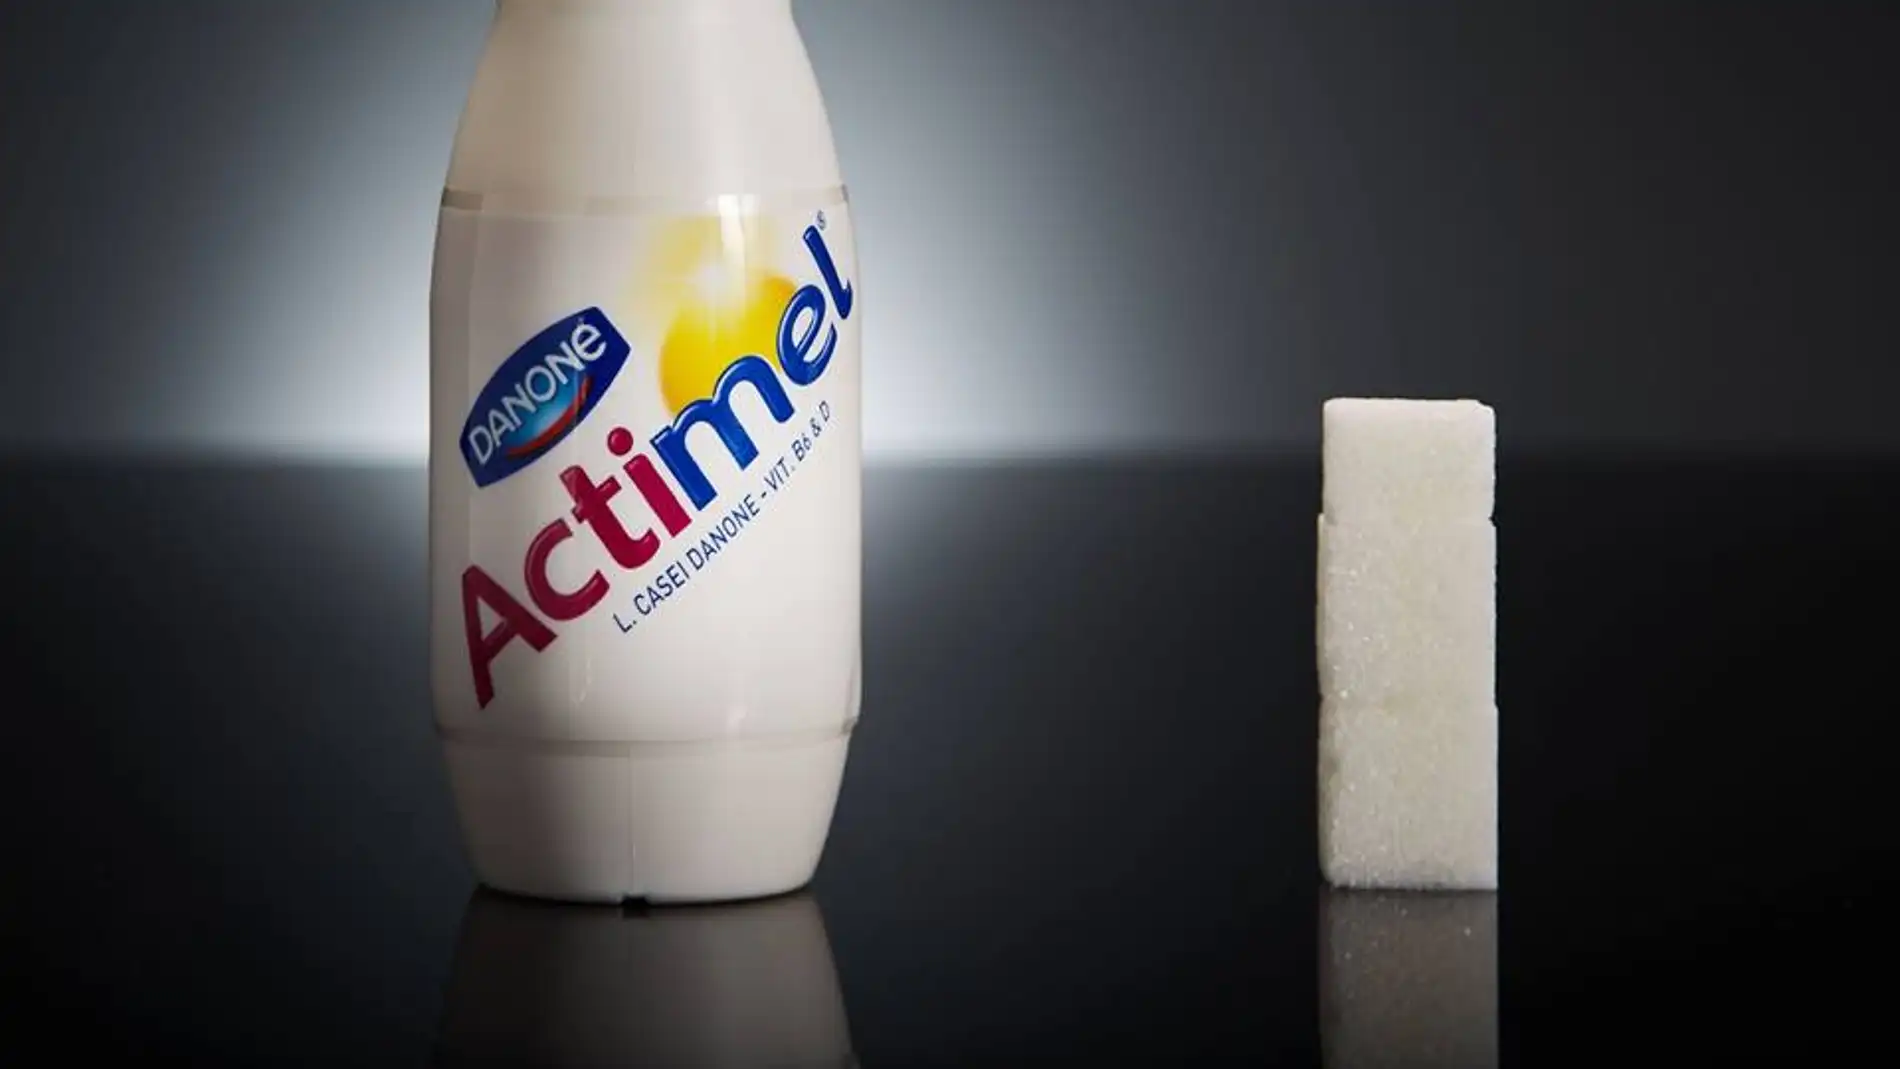 1 botellita de Actimel tiene 11,5g de azúcar, casi 3 terrones.